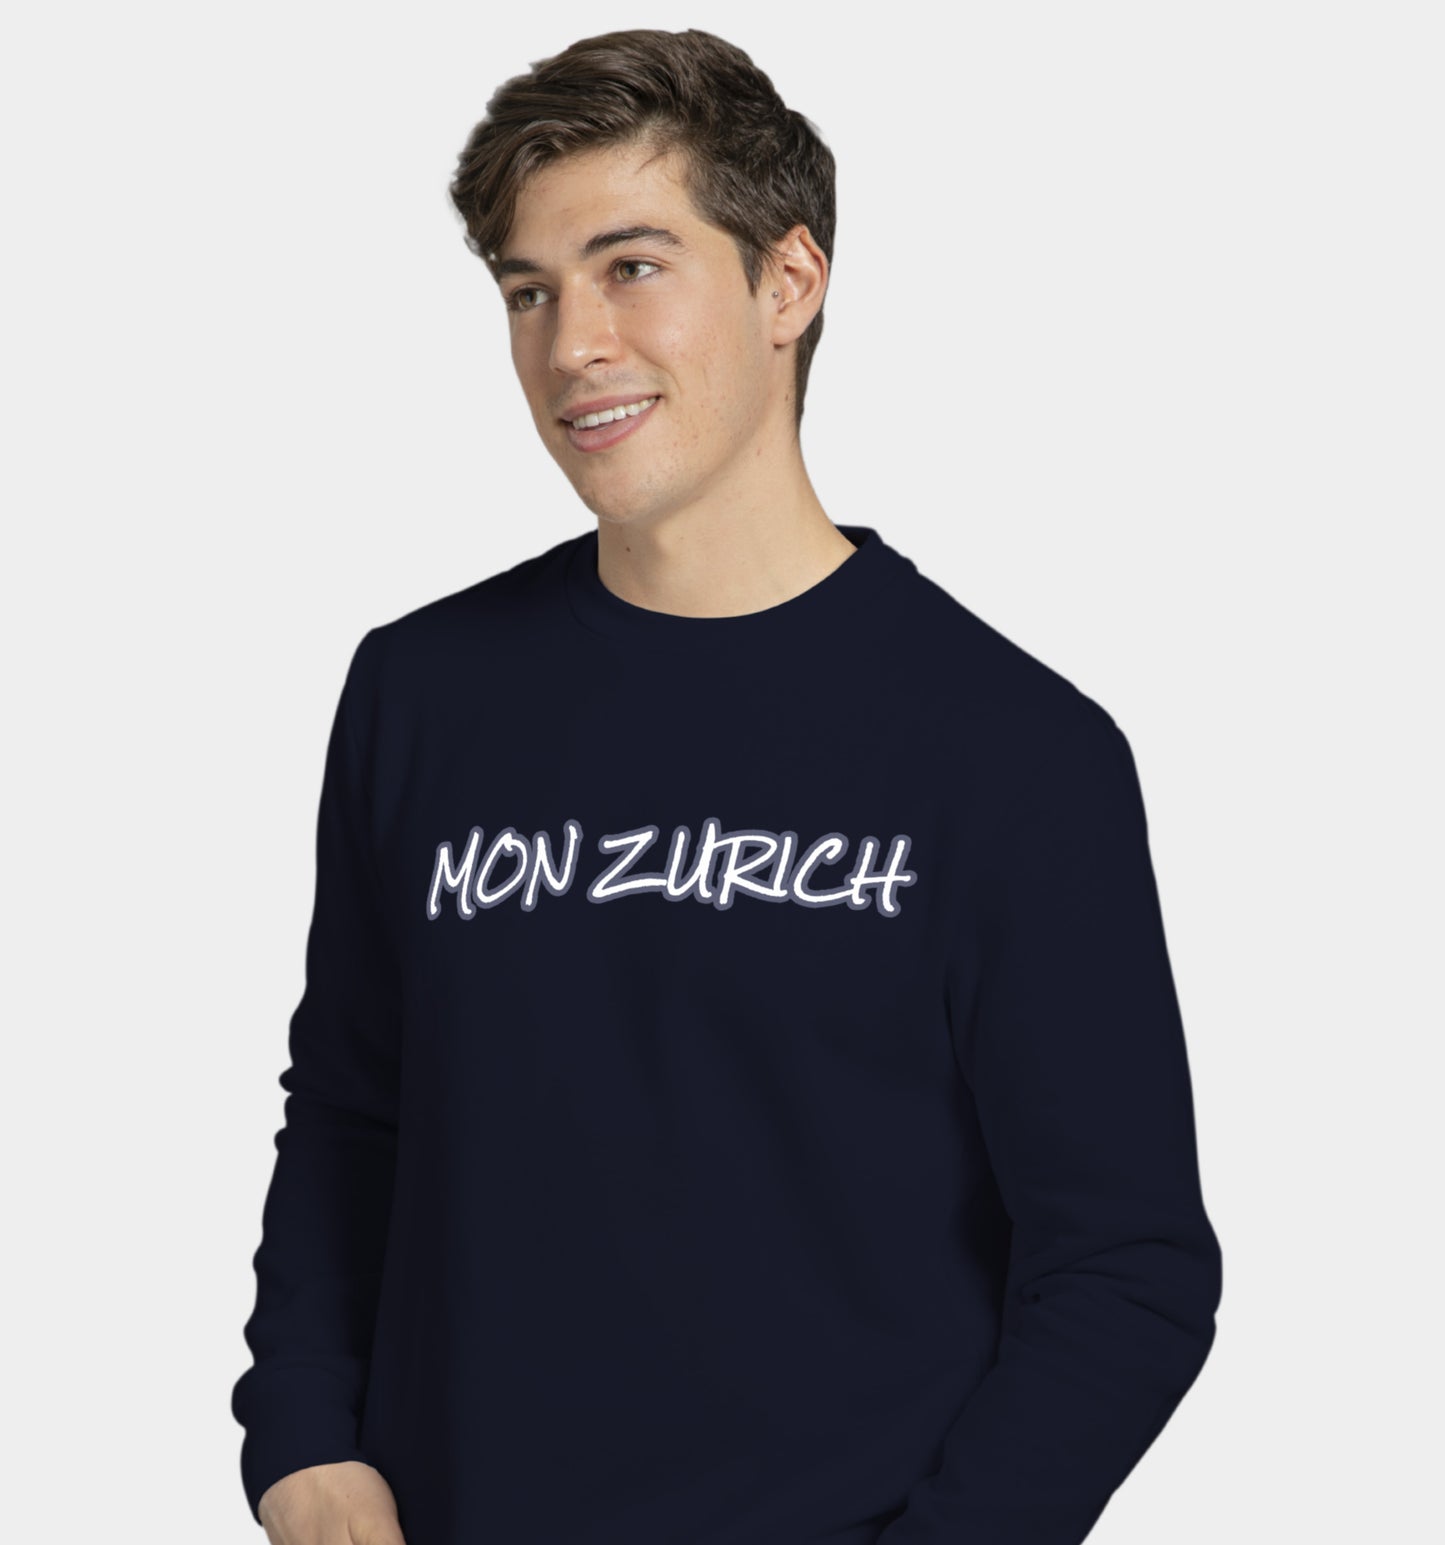 Mon Zurich (Hoodie) sweatshirt In Streetwear - Mon Zurich Originals